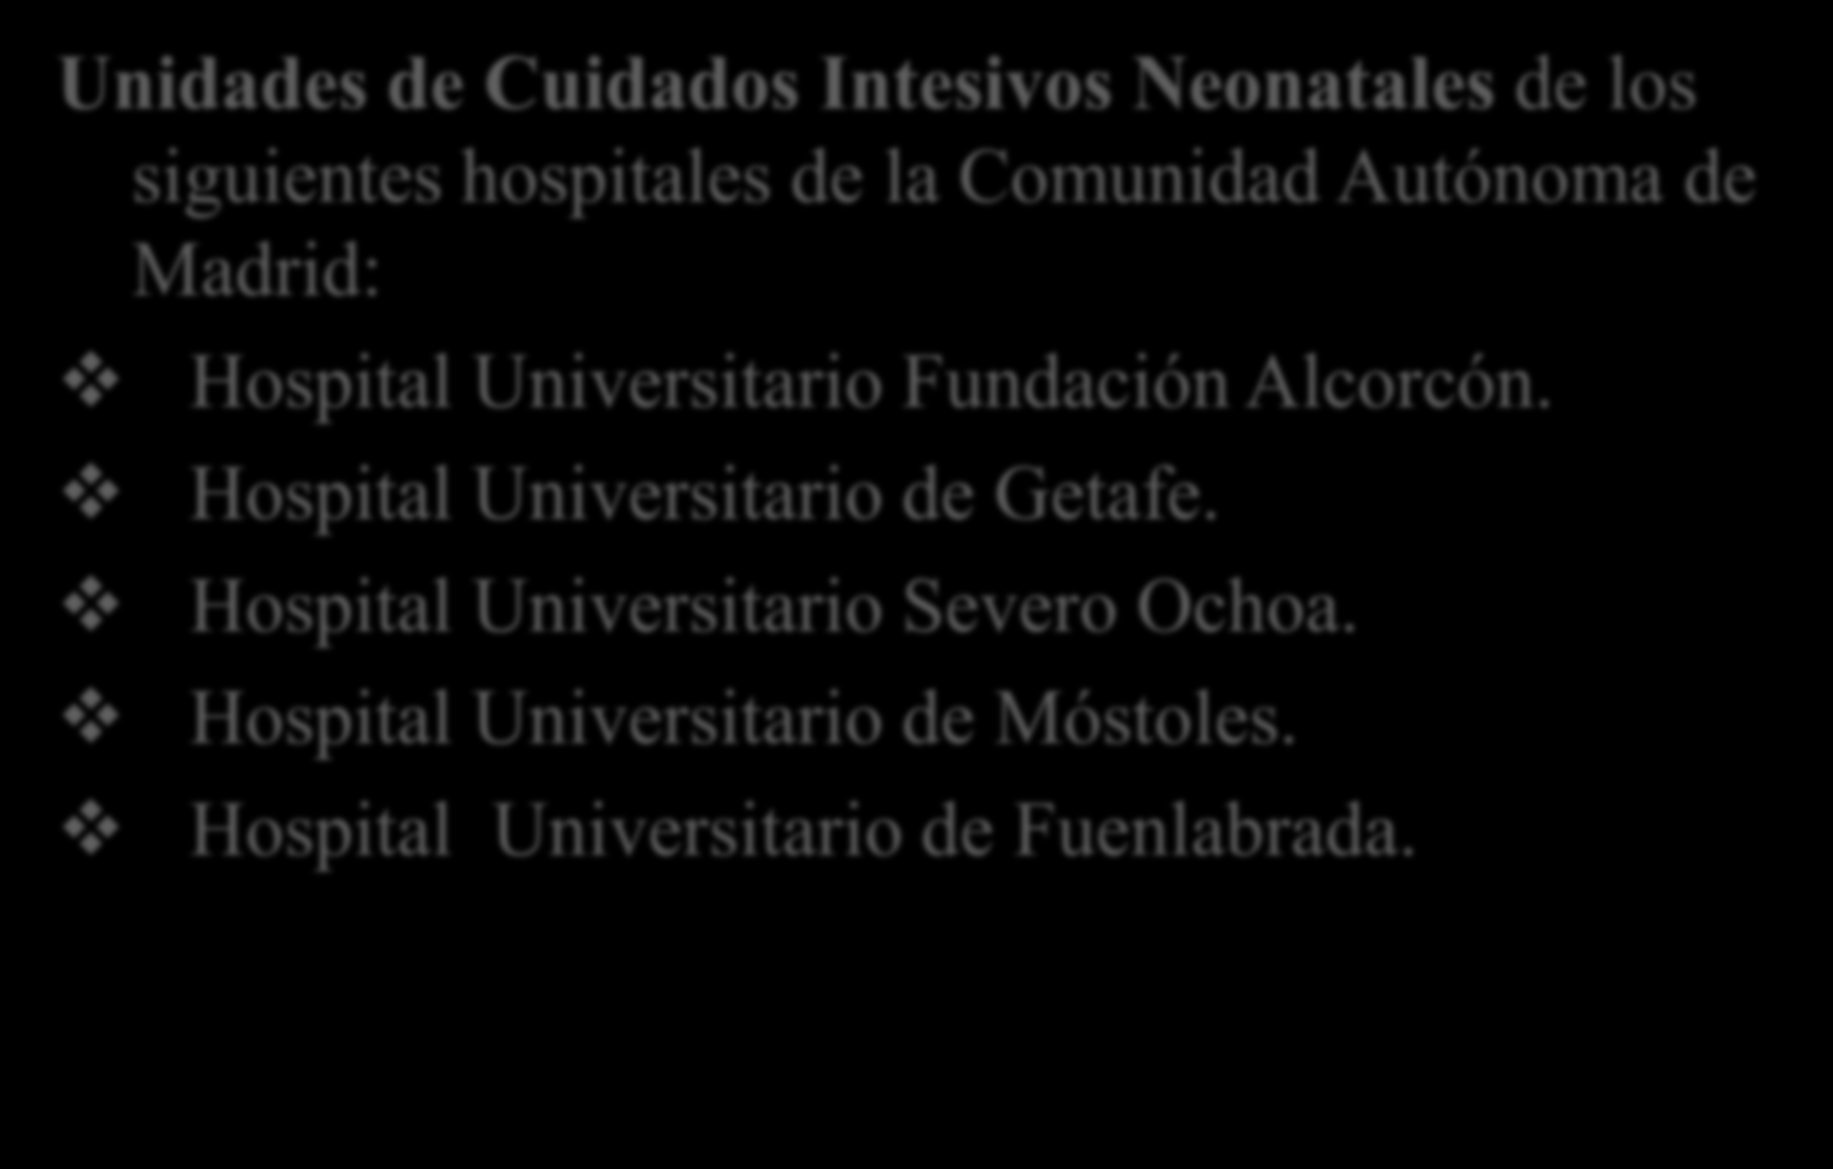 Ambito de aplicación: Unidades de Cuidados Intesivos Neonatales de los siguientes hospitales de la Comunidad Autónoma de Madrid: Hospital Universitario